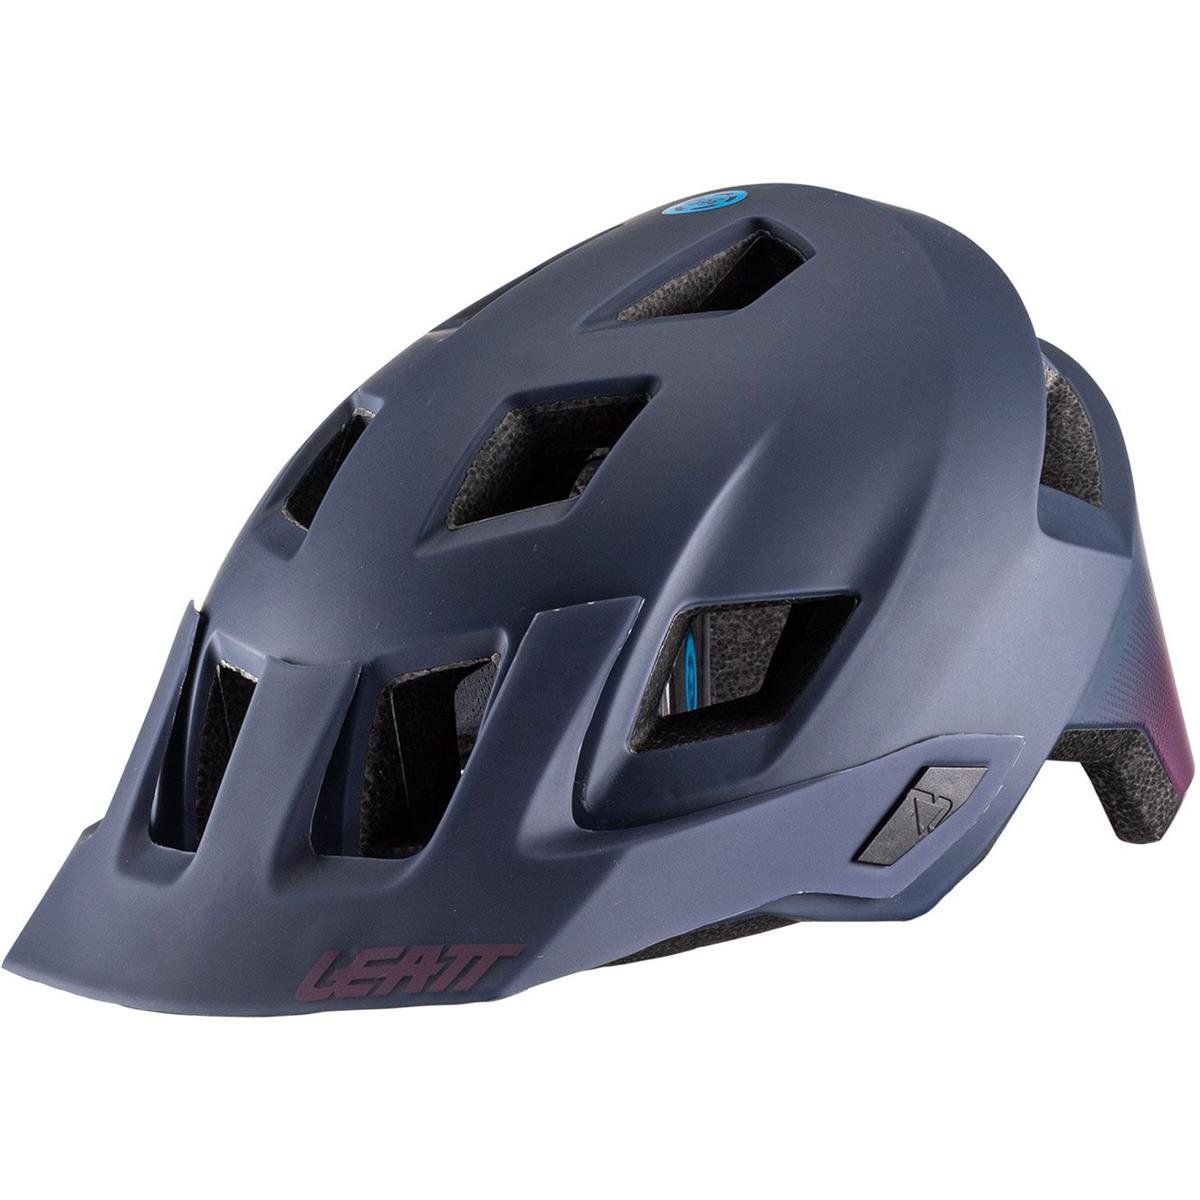 Leatt Enduro MTB Helmet 1.0 All Mountain Dusk